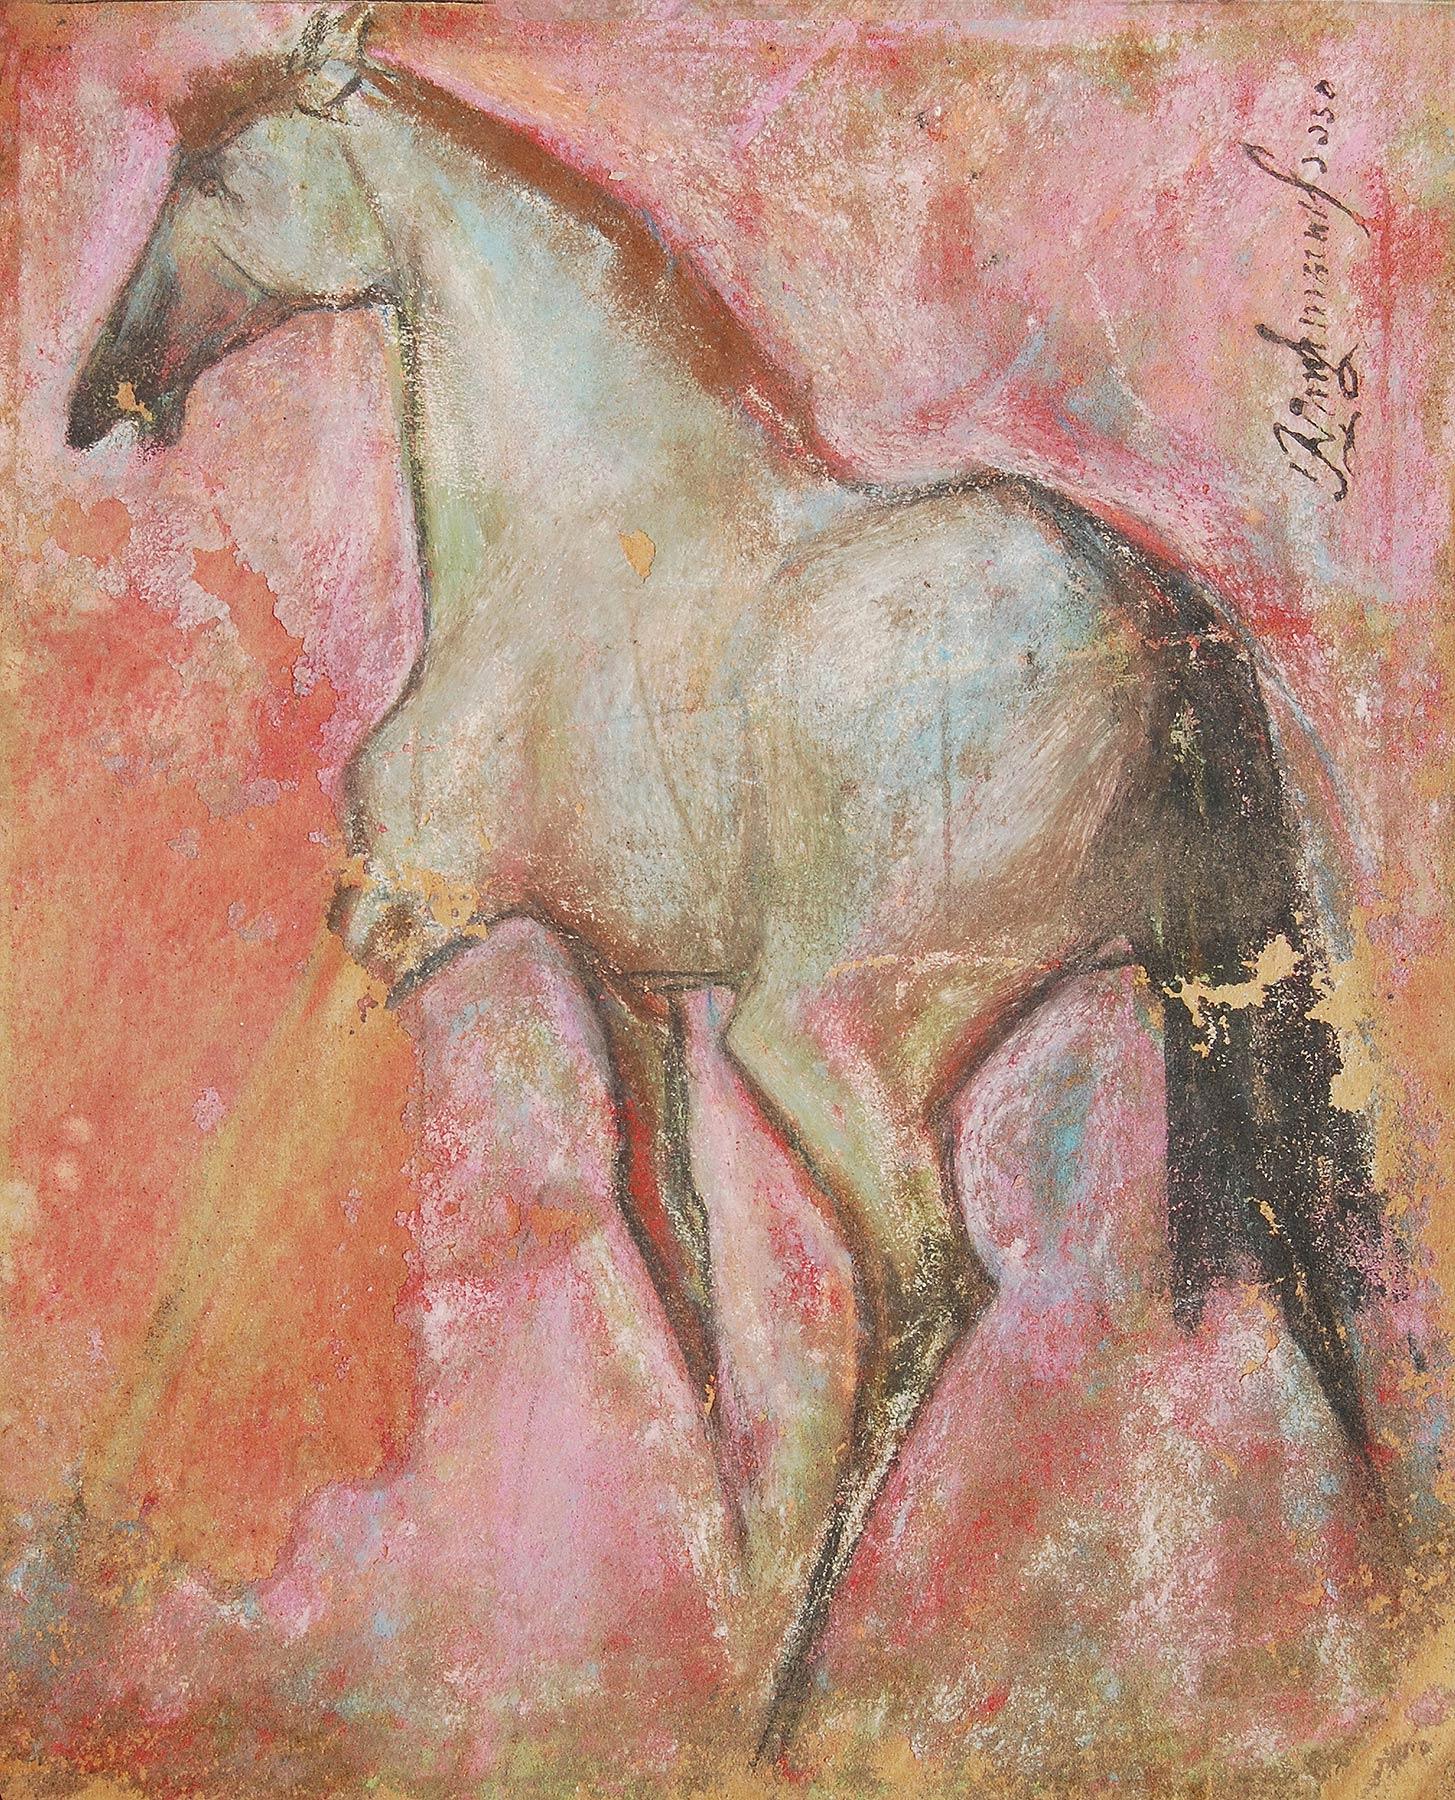 Sunil Das - Pferd II - 11 x 9 Zoll (ungerahmtes Format)
Pastell auf Sandpapier
Inklusive Versand in hängefertiger Form.

Sunil Das war einer der wichtigsten postmodernen Maler Indiens und wurde durch seine Pferdezeichnungen bekannt. Er hat ihr